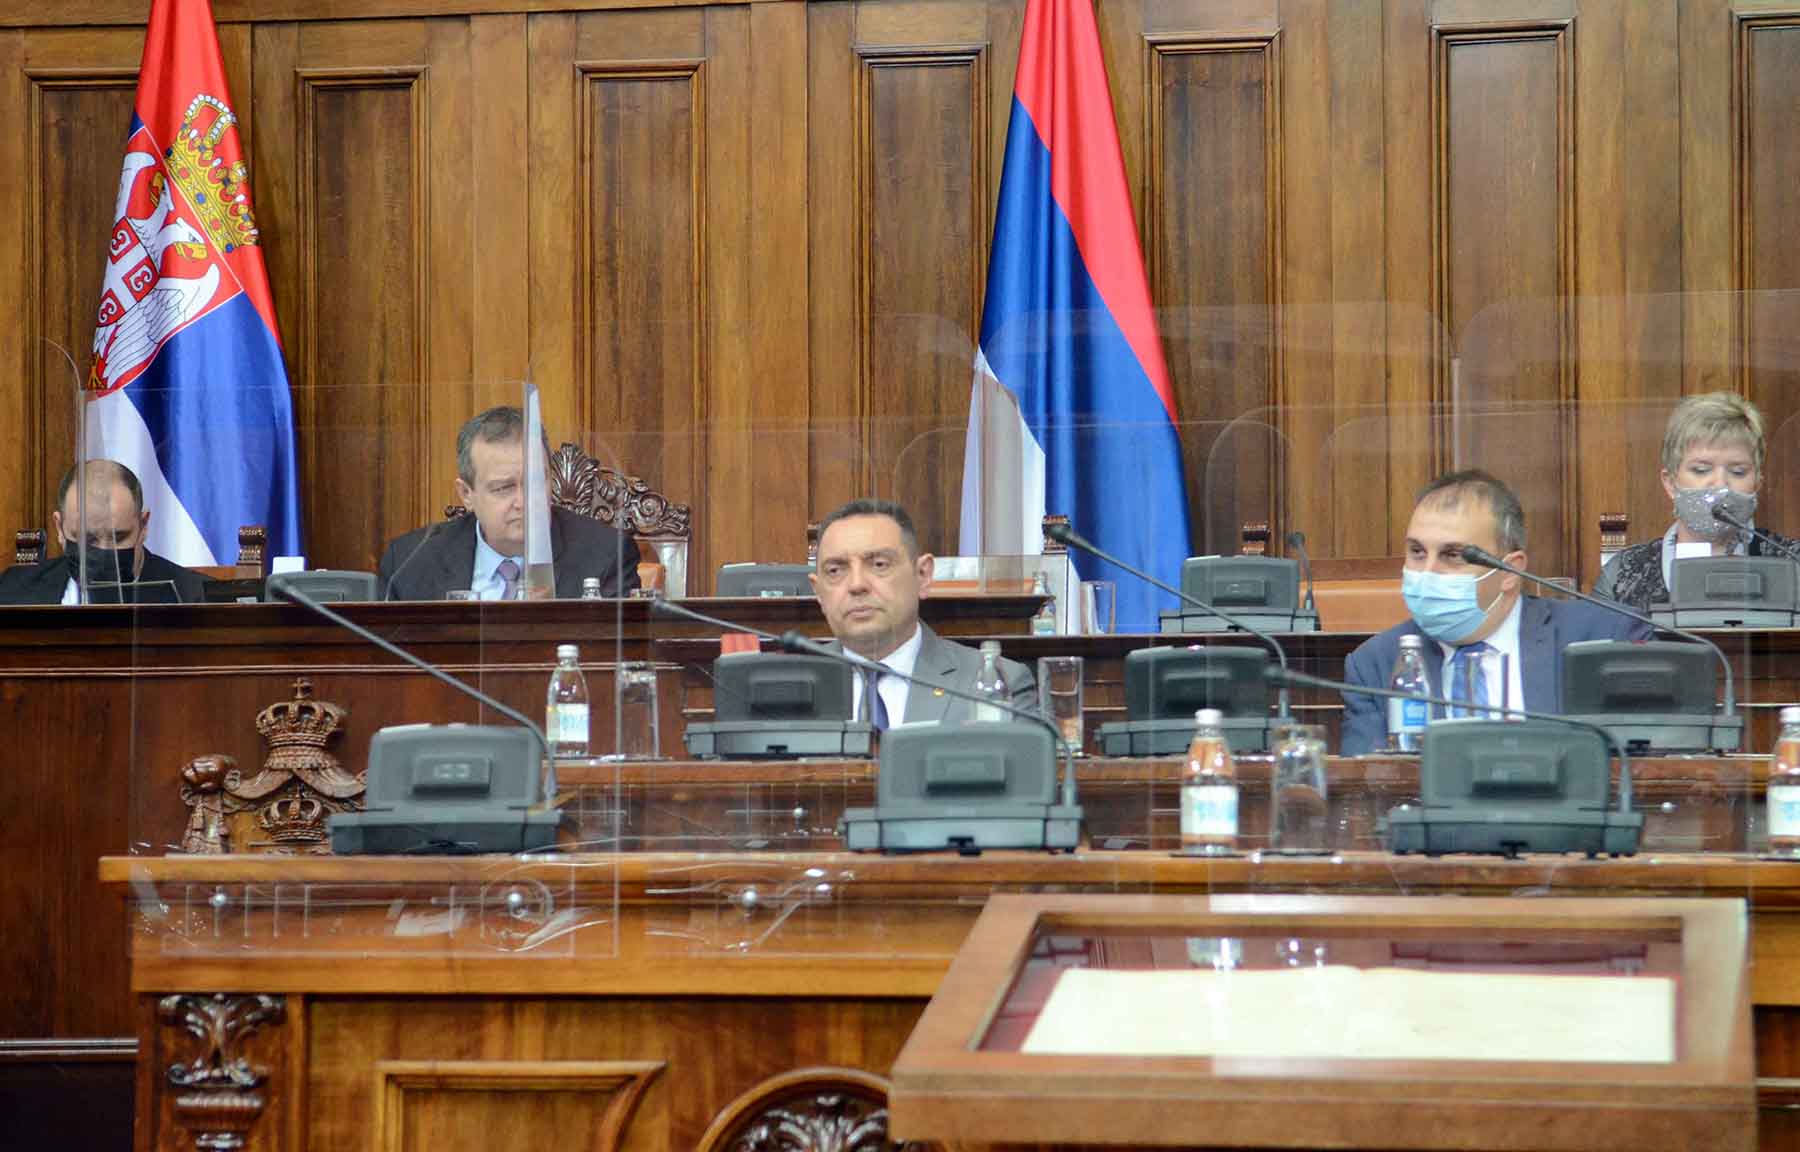 Министар Вулин: Издат налог УКП-у да истражи случај објаве фотографија и снимака на Телеграму, кривци ће бити нађени и кажњени